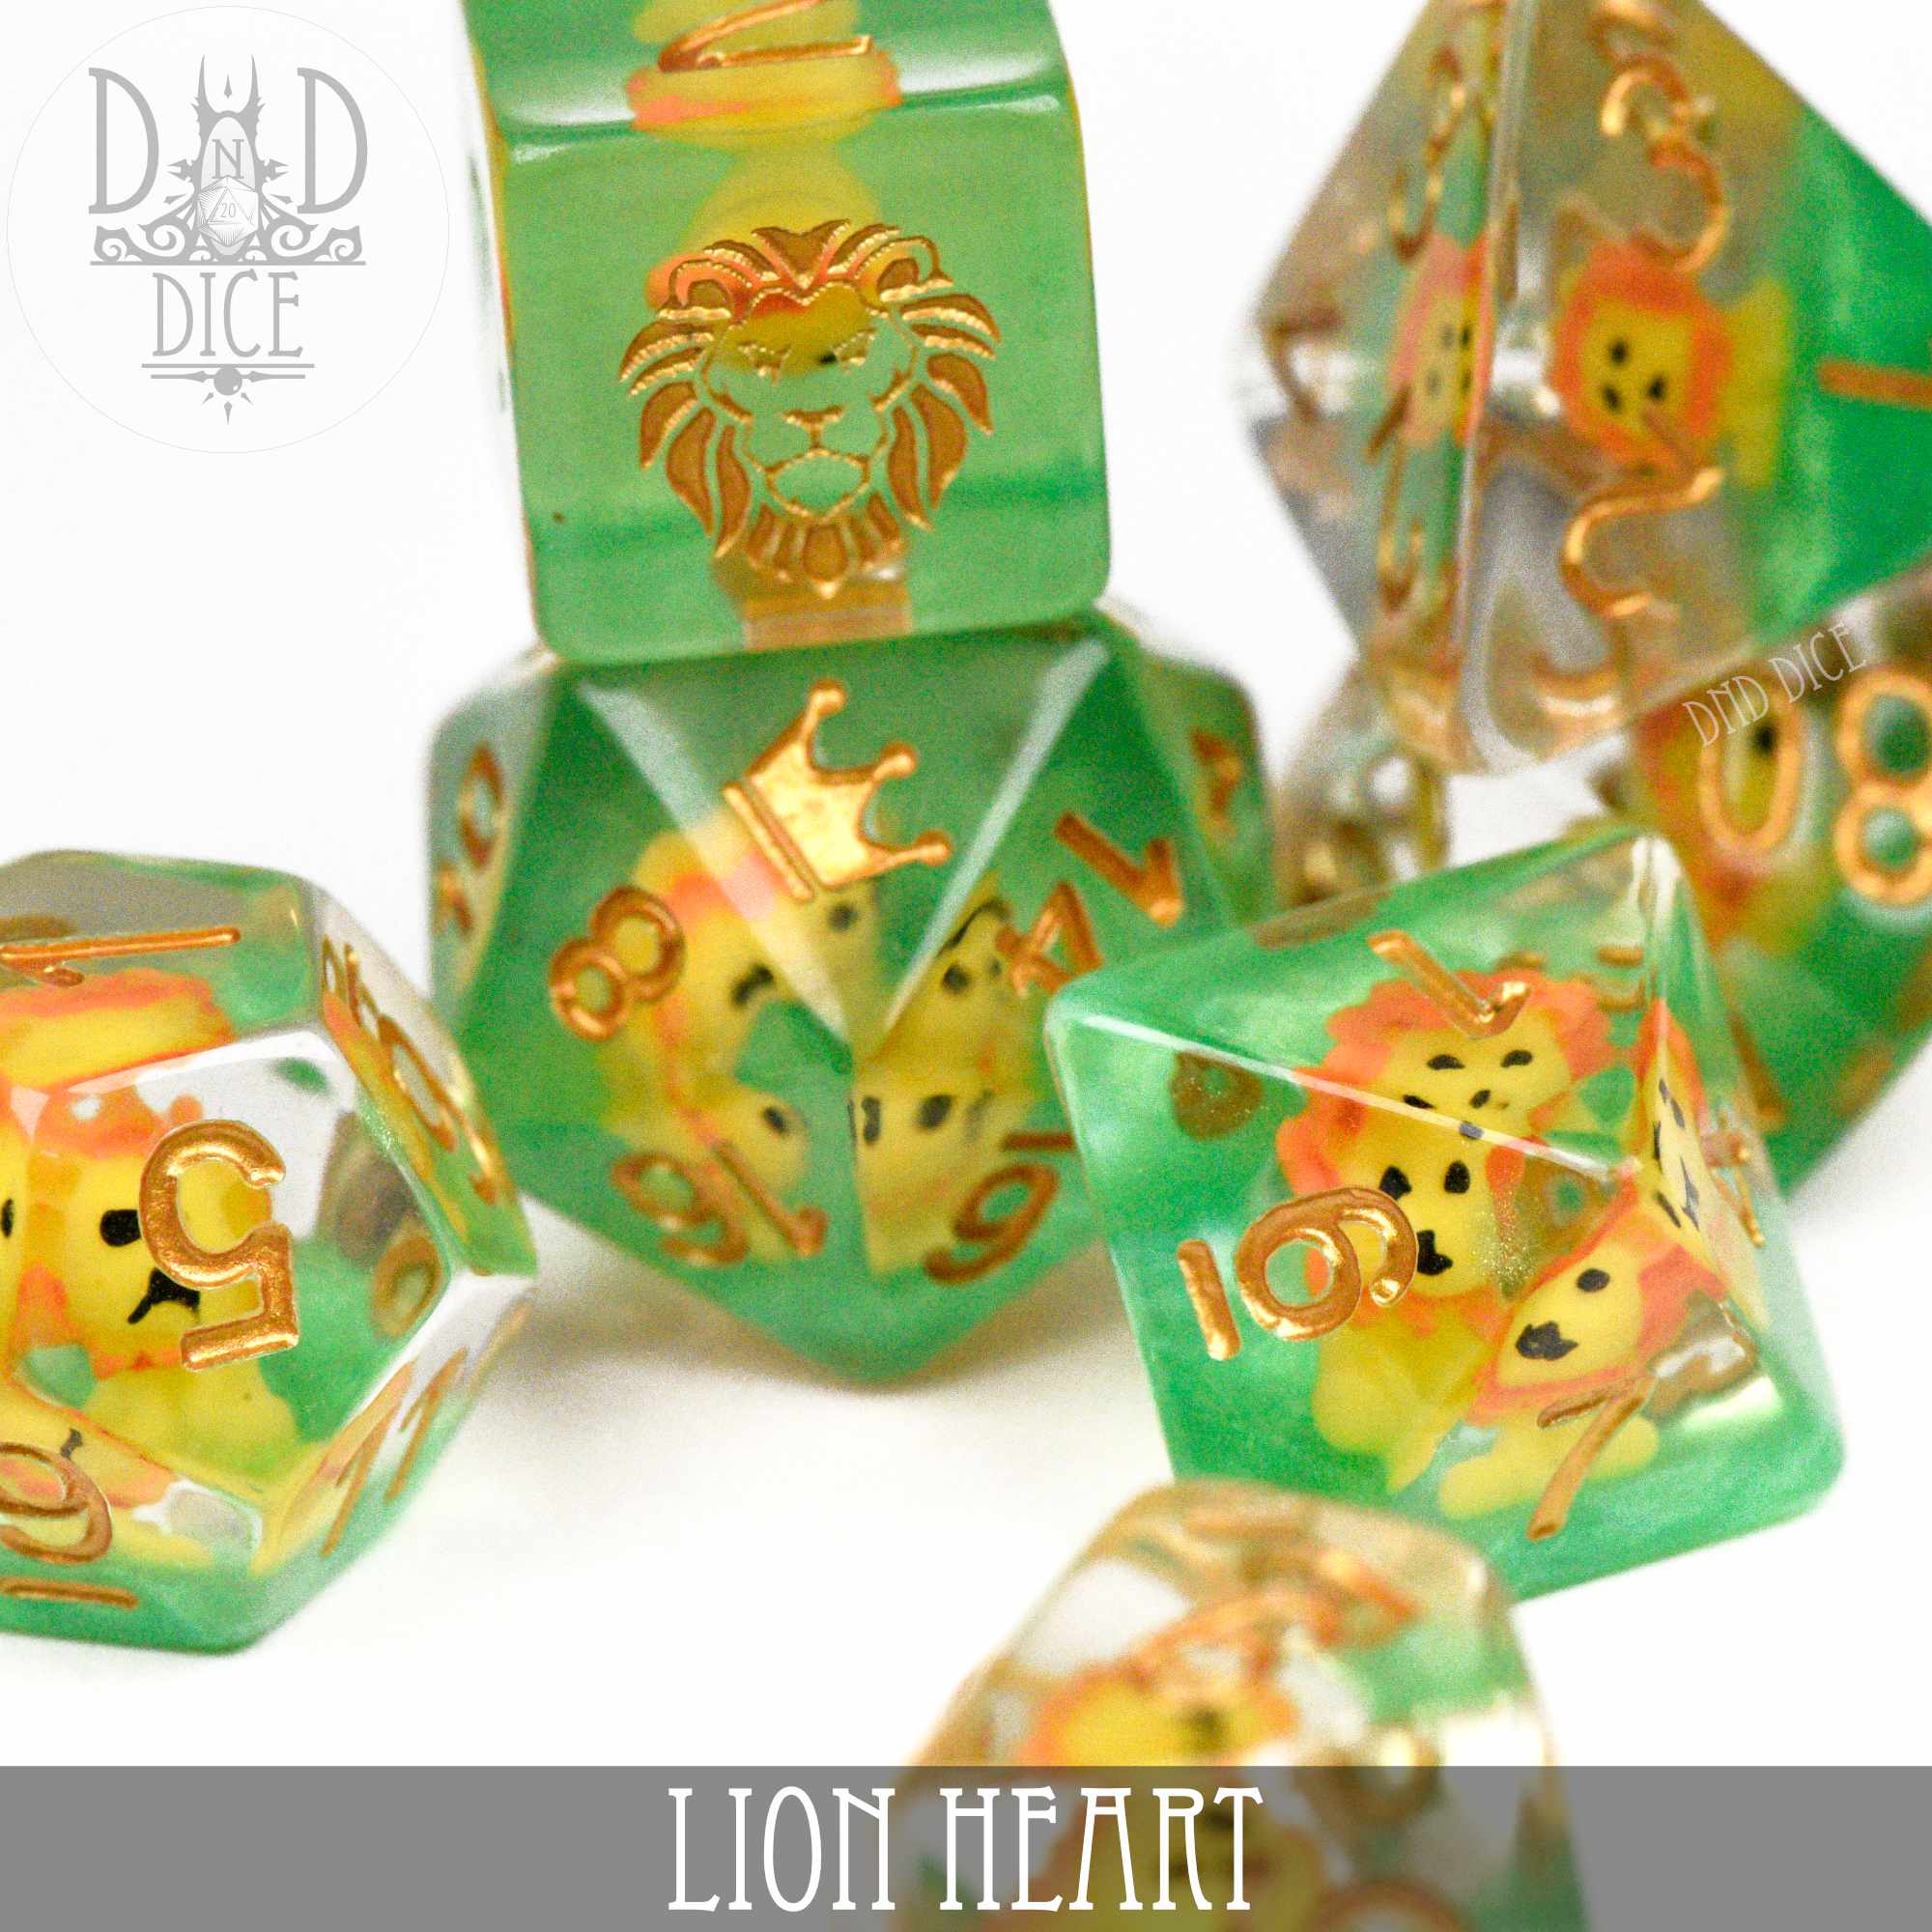 Lion Heart Dice Set